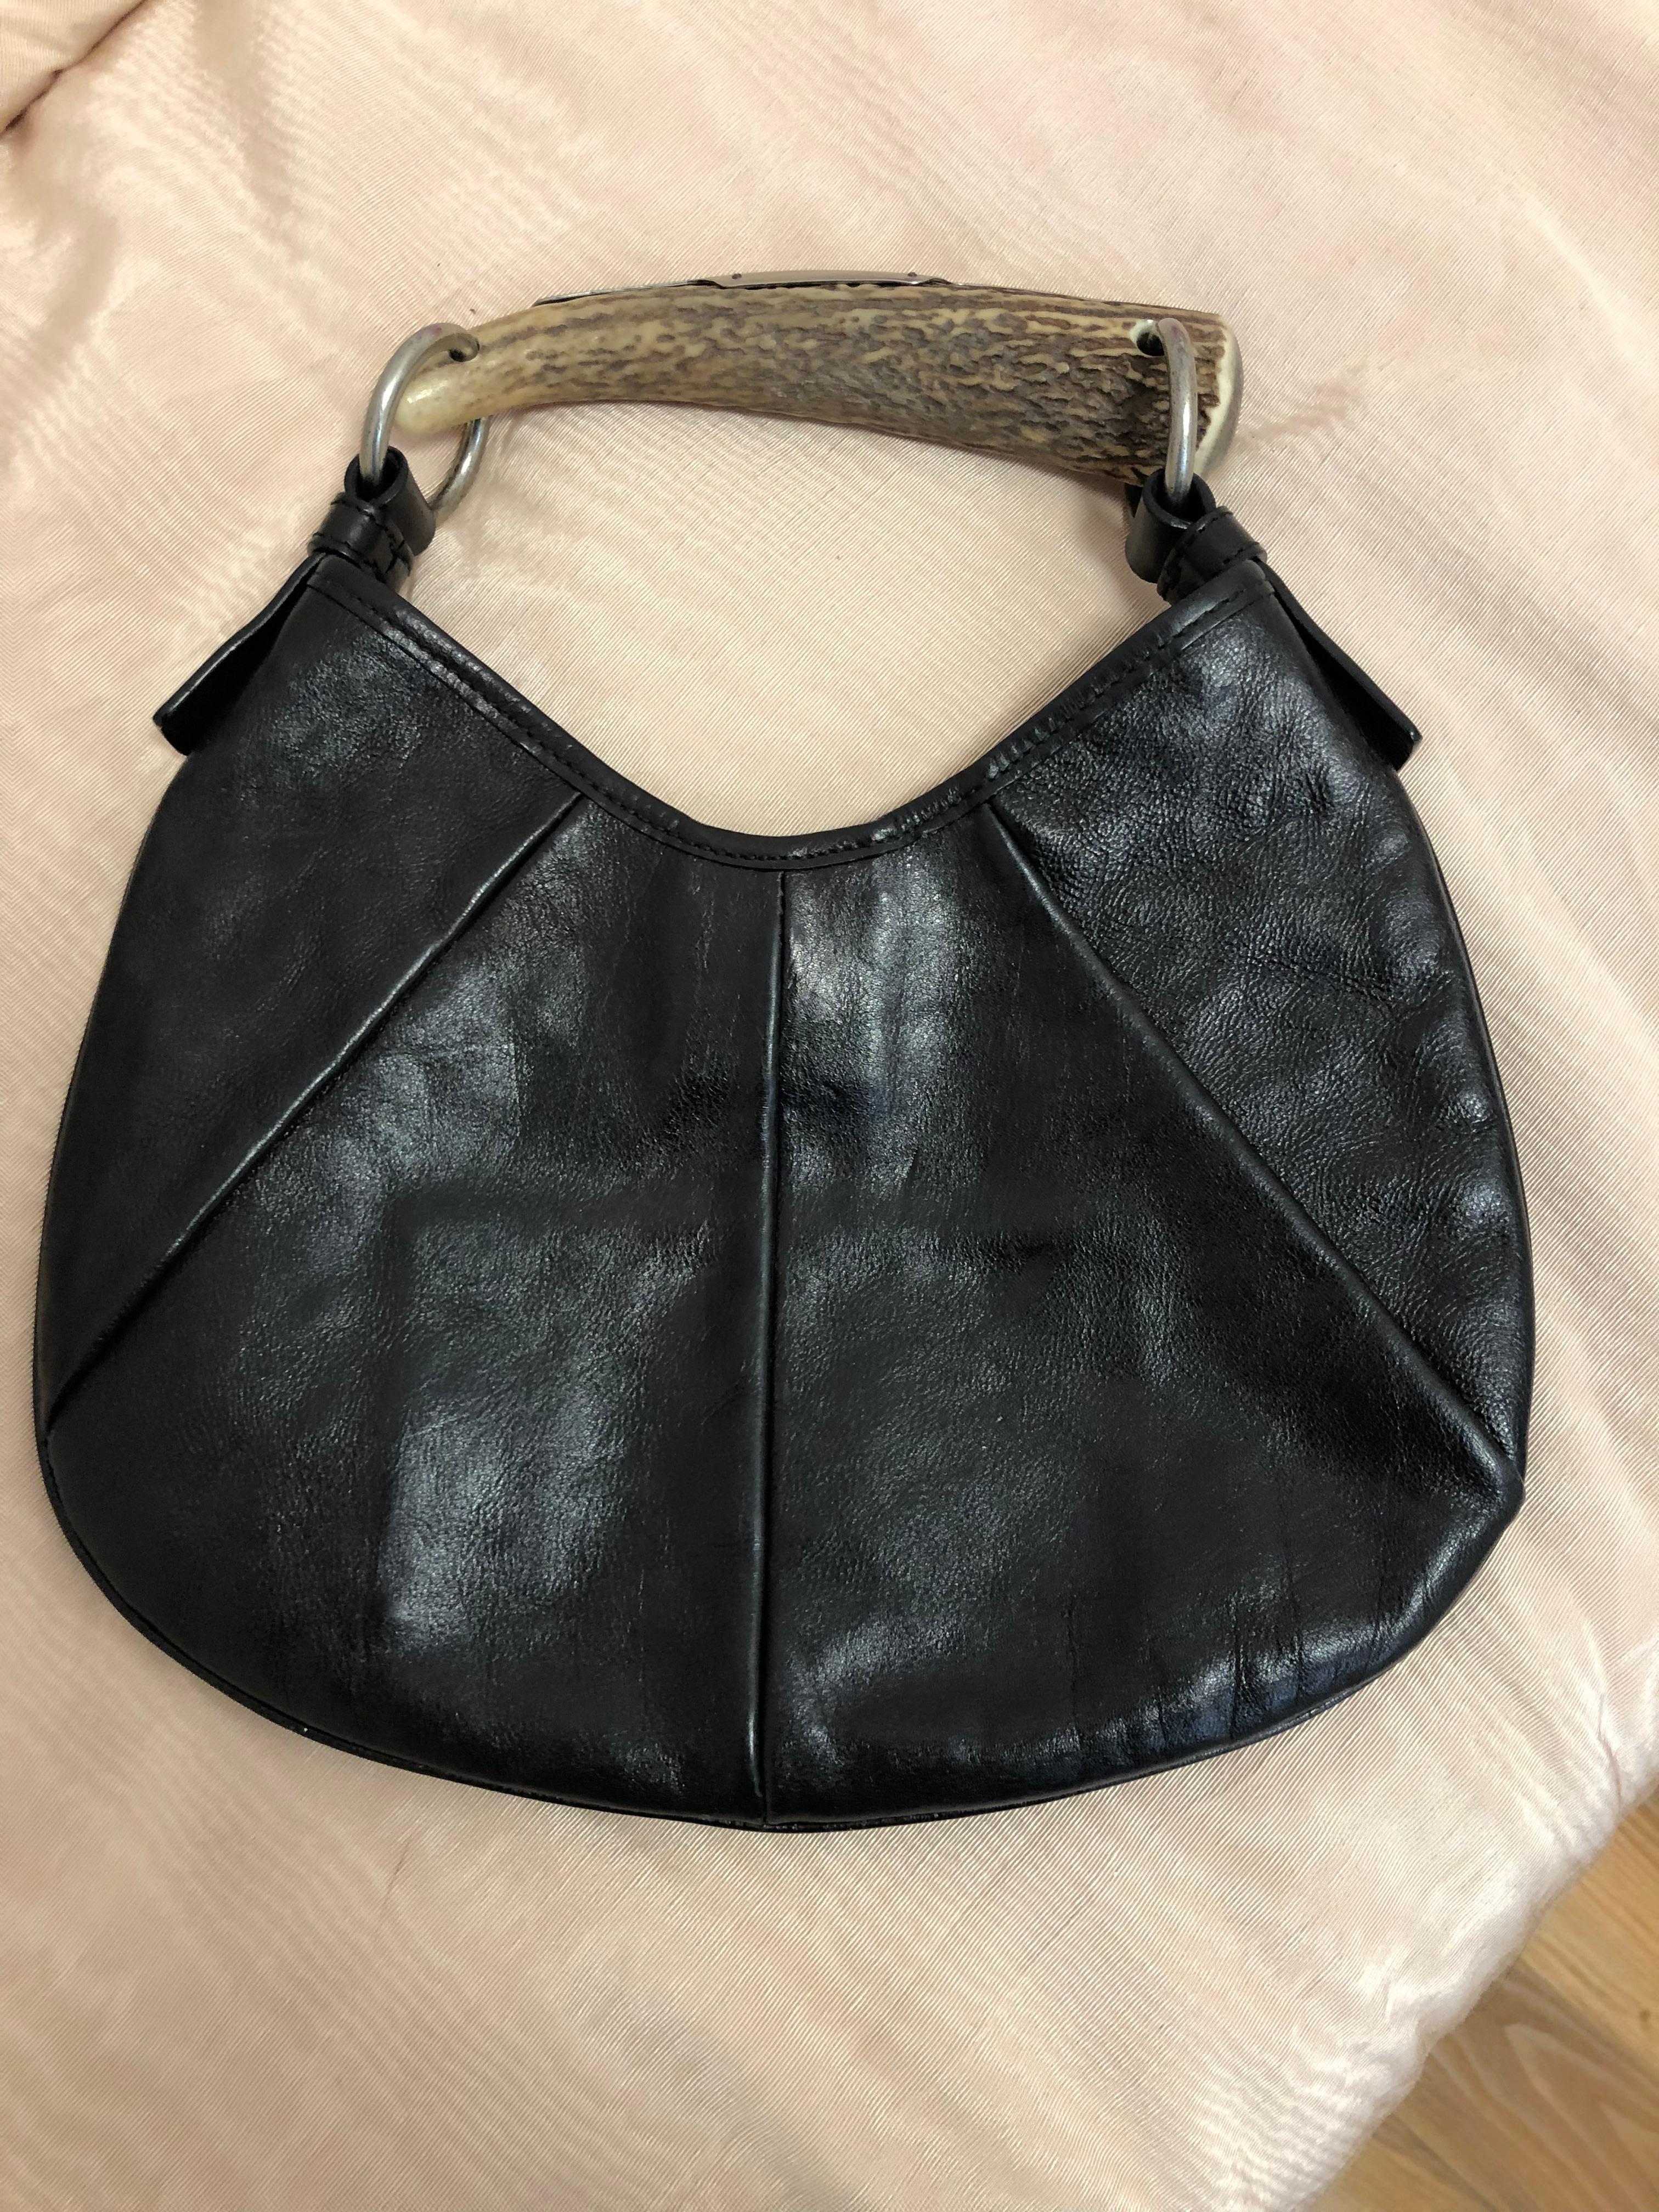 Yves Saint Laurent Black Leather Mombassa Handbag by Tom Ford 1